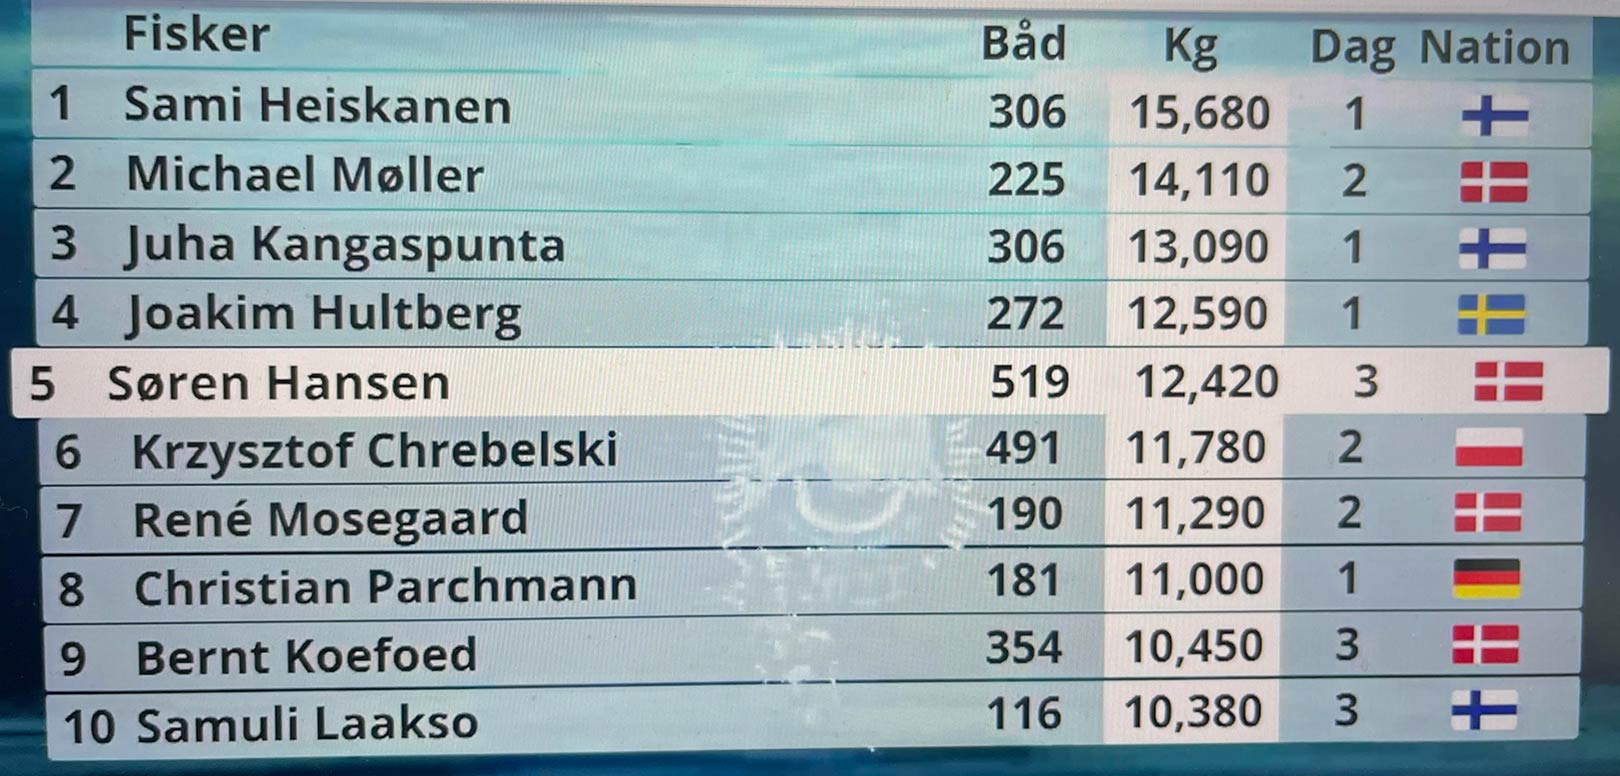 Konkurrencen føres stadig af finske Sami Heiskanen med en fantastisk laks på 15,680 kilo taget på dag 1